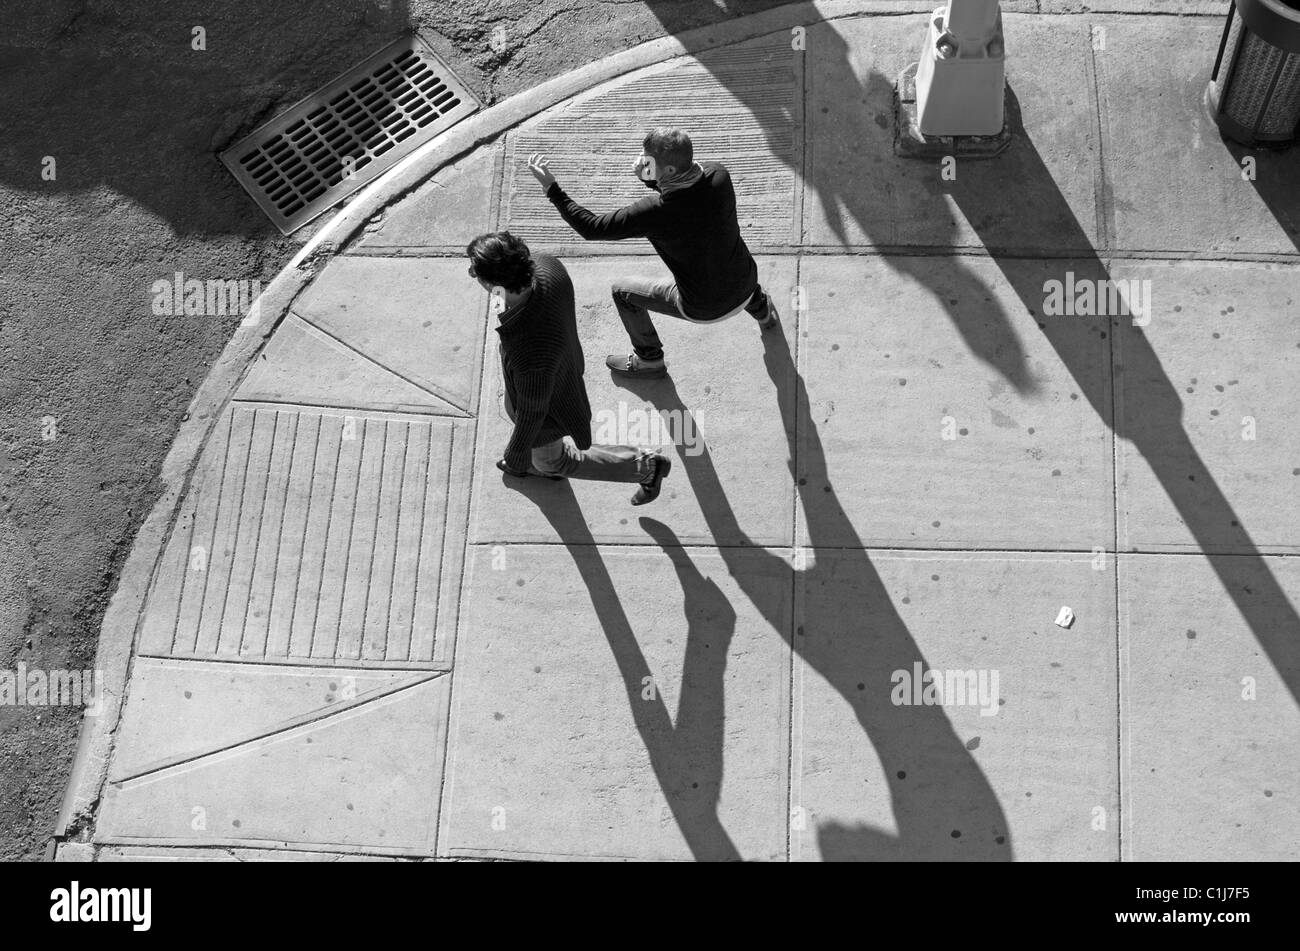 2 Les hommes projettent de grandes ombres comme ils marchent en fin d'après-midi dans la ville de New York. Banque D'Images